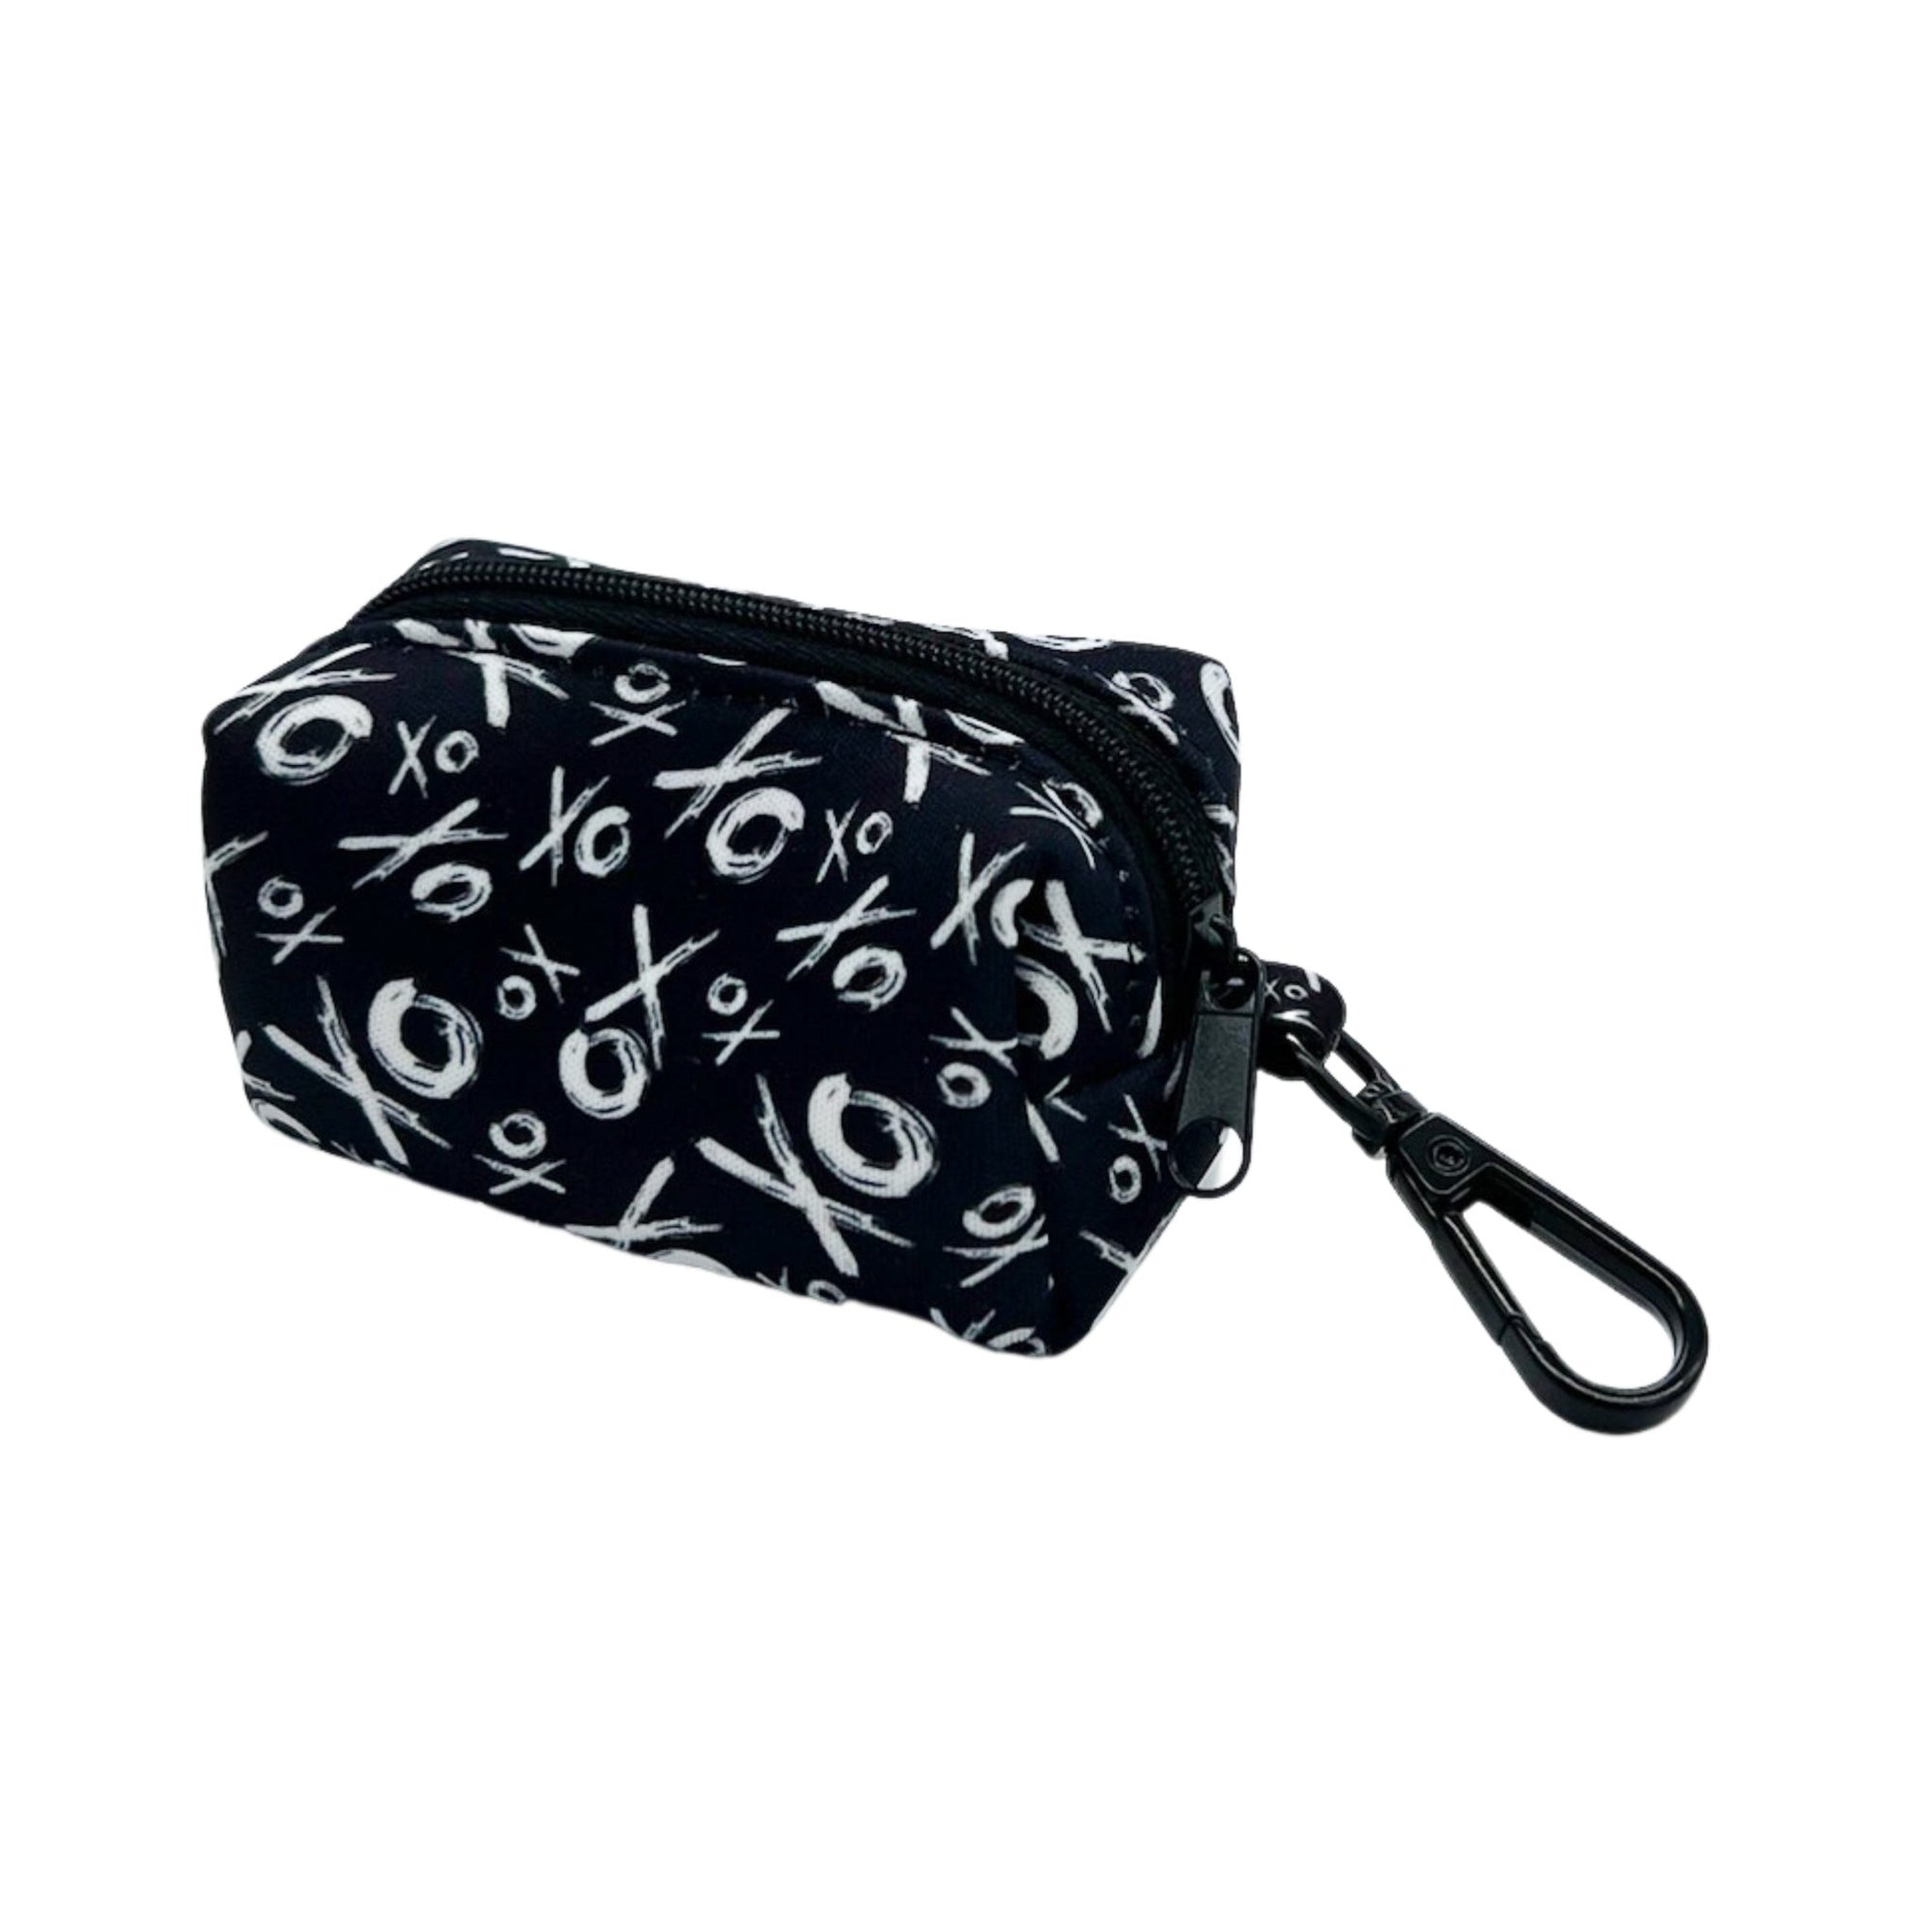 Dog Poo Bag Holder - black &amp; white XO pattern - Hugs &amp; Kisses XO - against white background -Wag Trendz